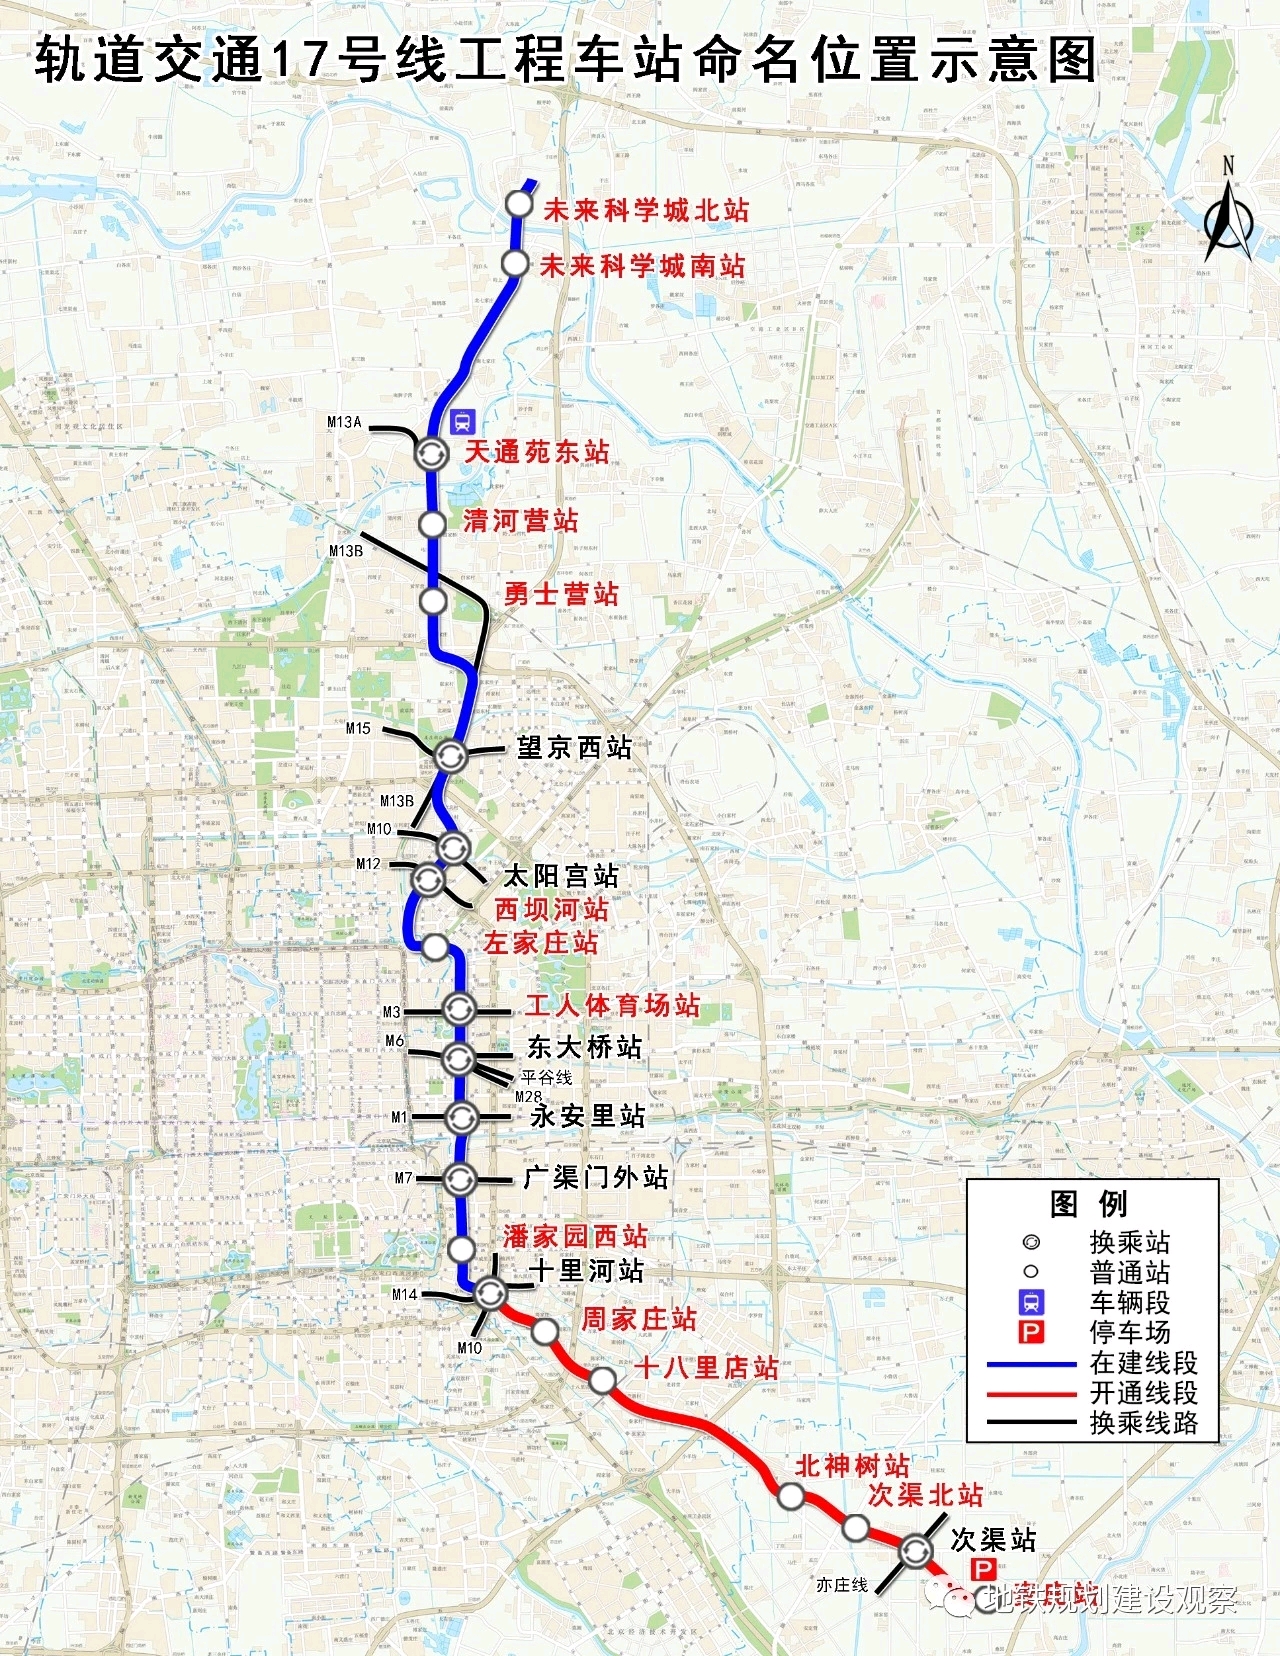 北京地铁17号线于2015年10月开工,预计于2021年底开通南段,2023年5月